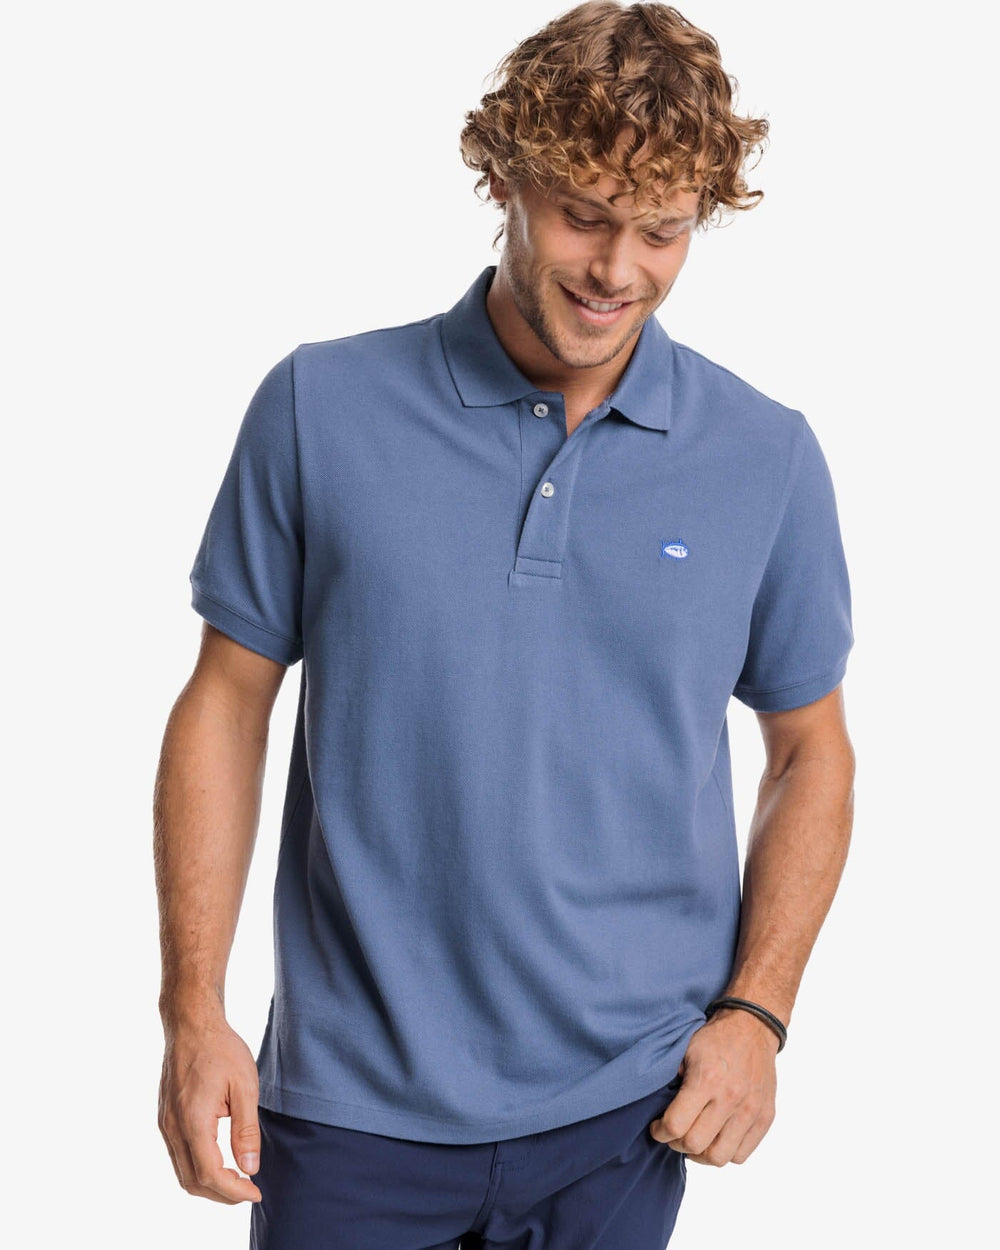 Lacoste Live Men's Polo Shirt Size 6 L New